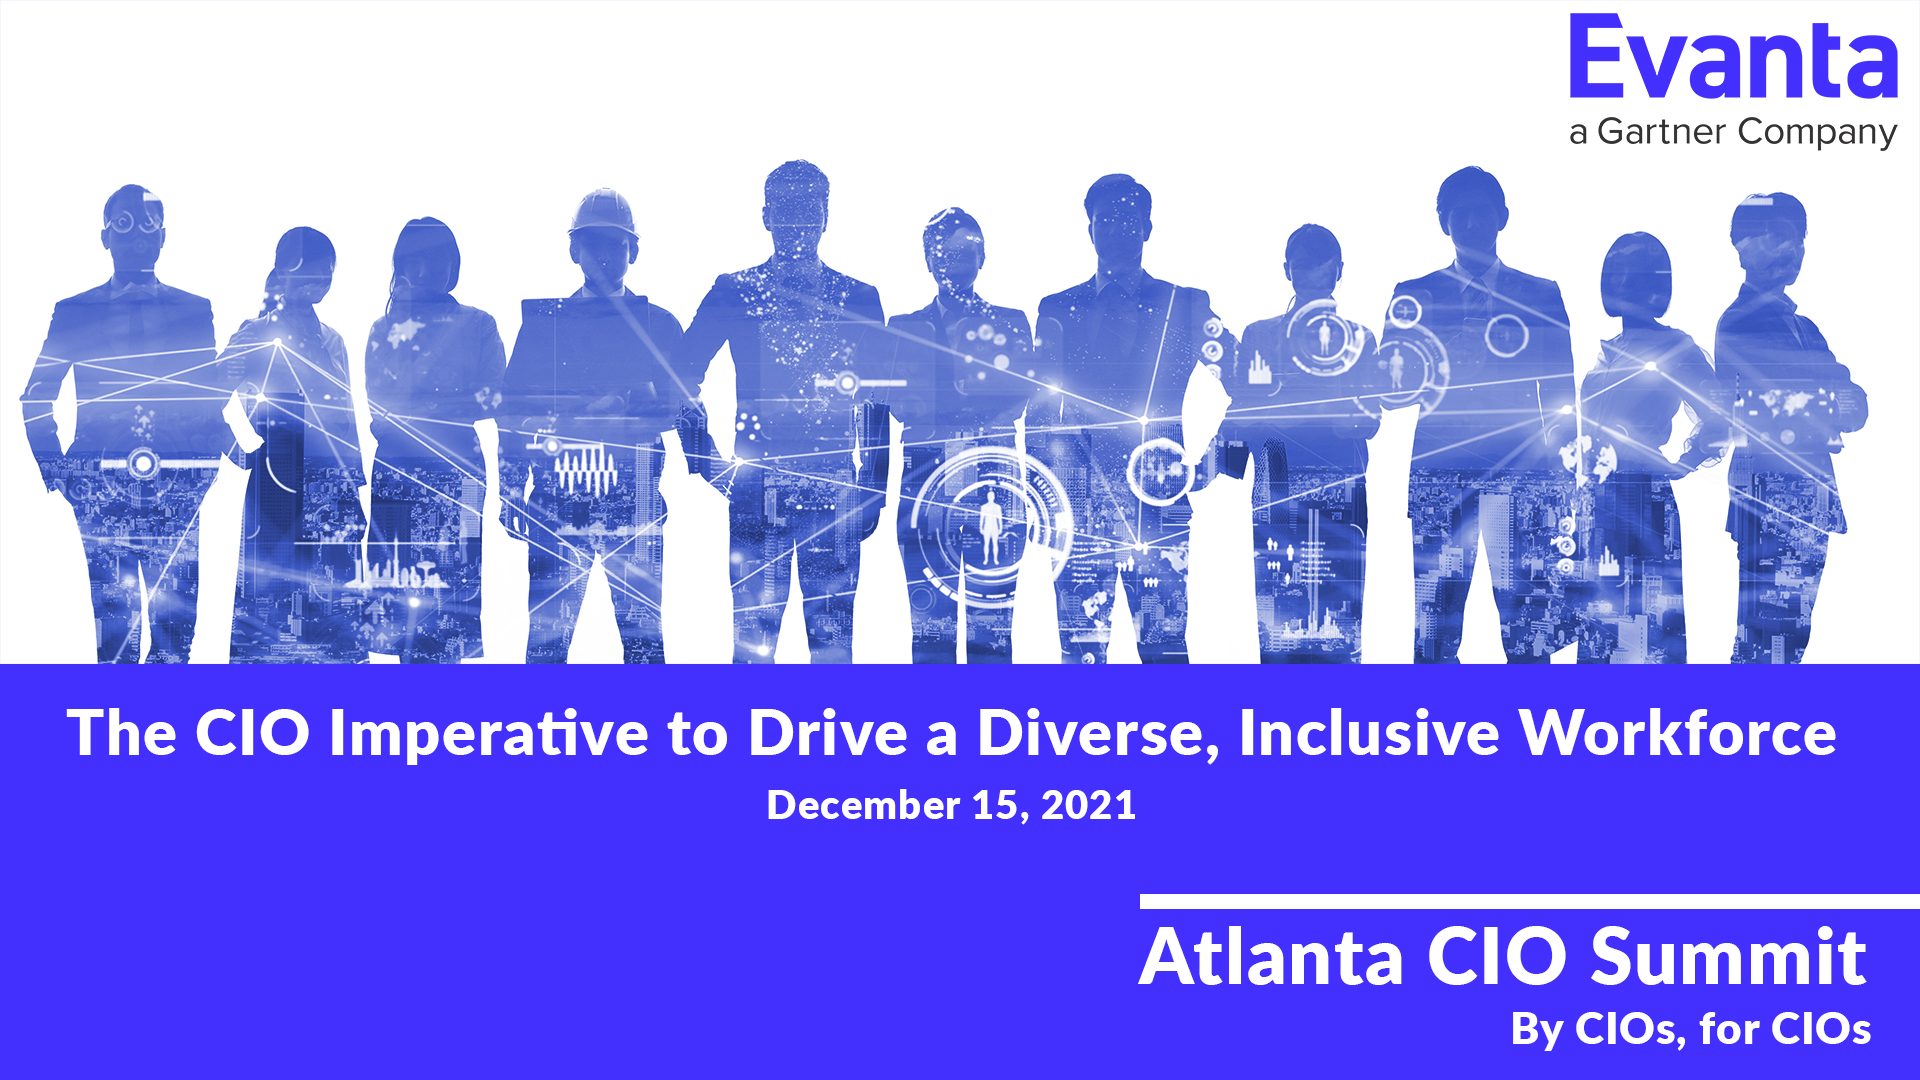 Gartner Evanta, Atlanta CIO Summit The CIO Imperative to Drive a